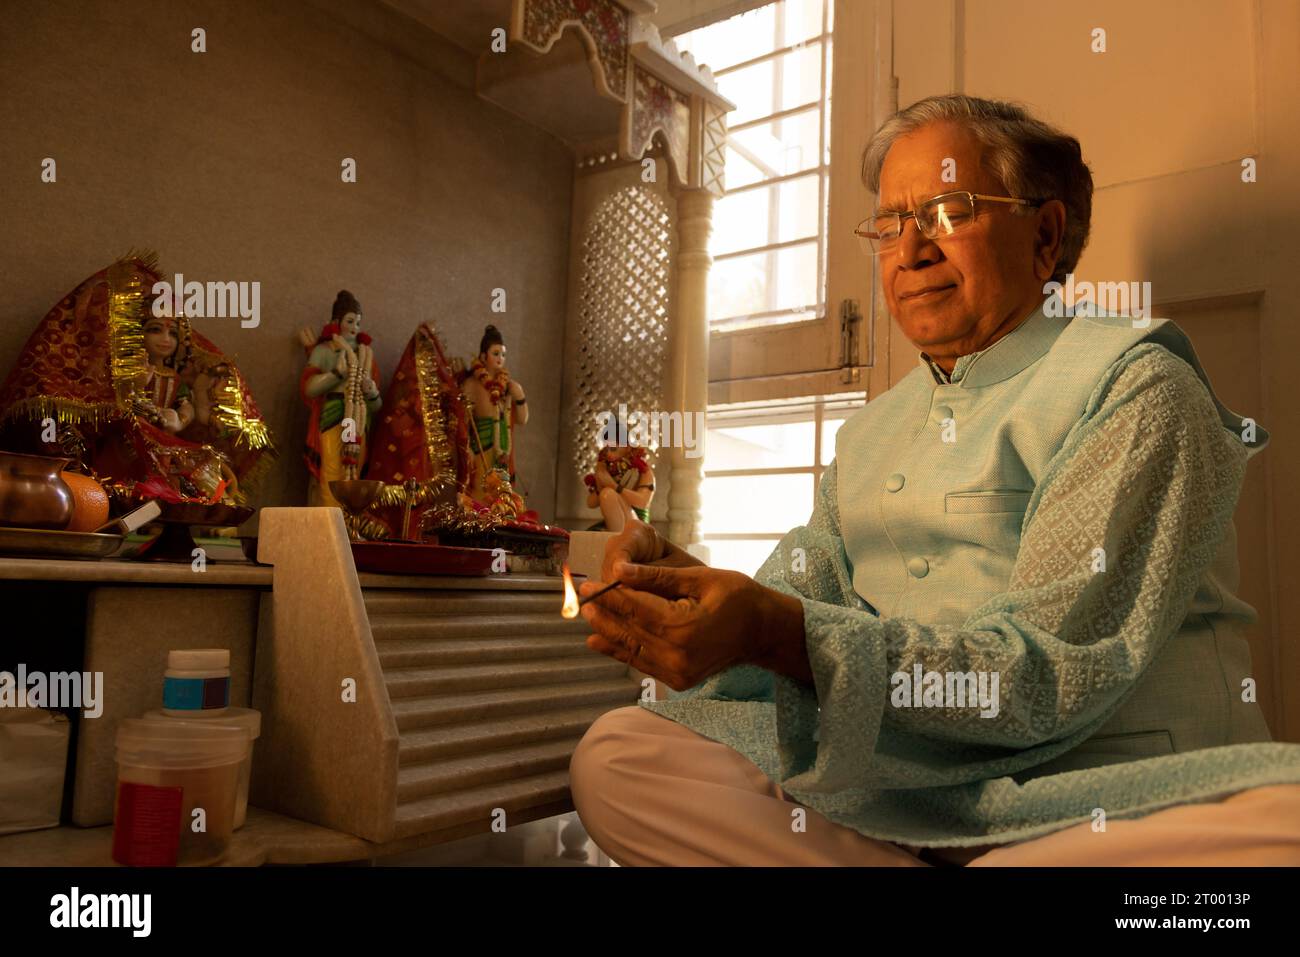 Porträt eines älteren Mannes, der zu Hause pooja des hinduistischen Gottes spielt Stockfoto